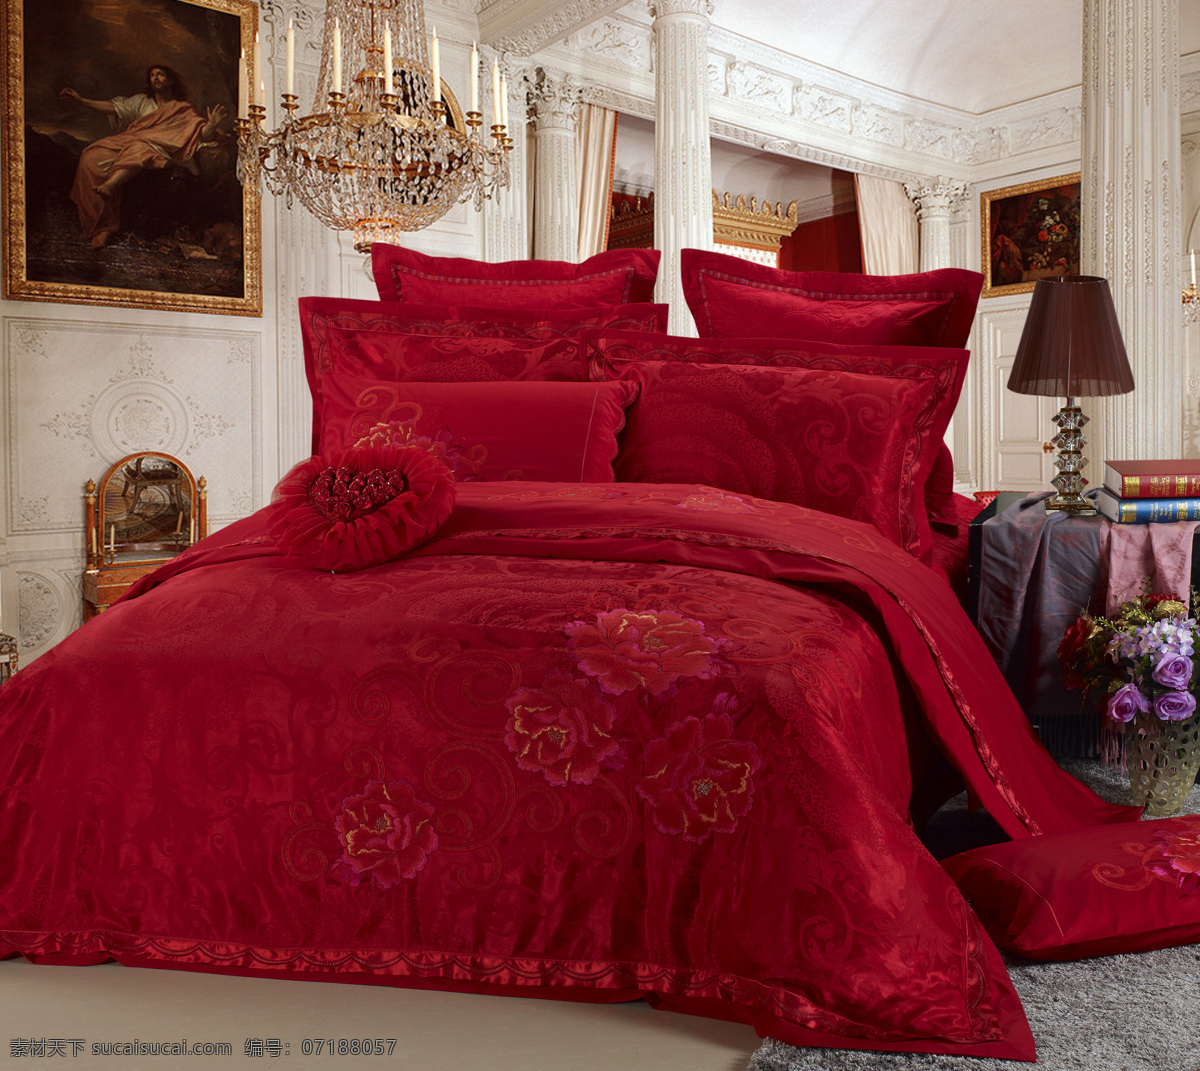 床上用品 被子 红色花纹 枕头 抱枕 台灯 花朵 情意绵延 心形 地毯 油画 牡丹花 家纺 生活百科 家居生活